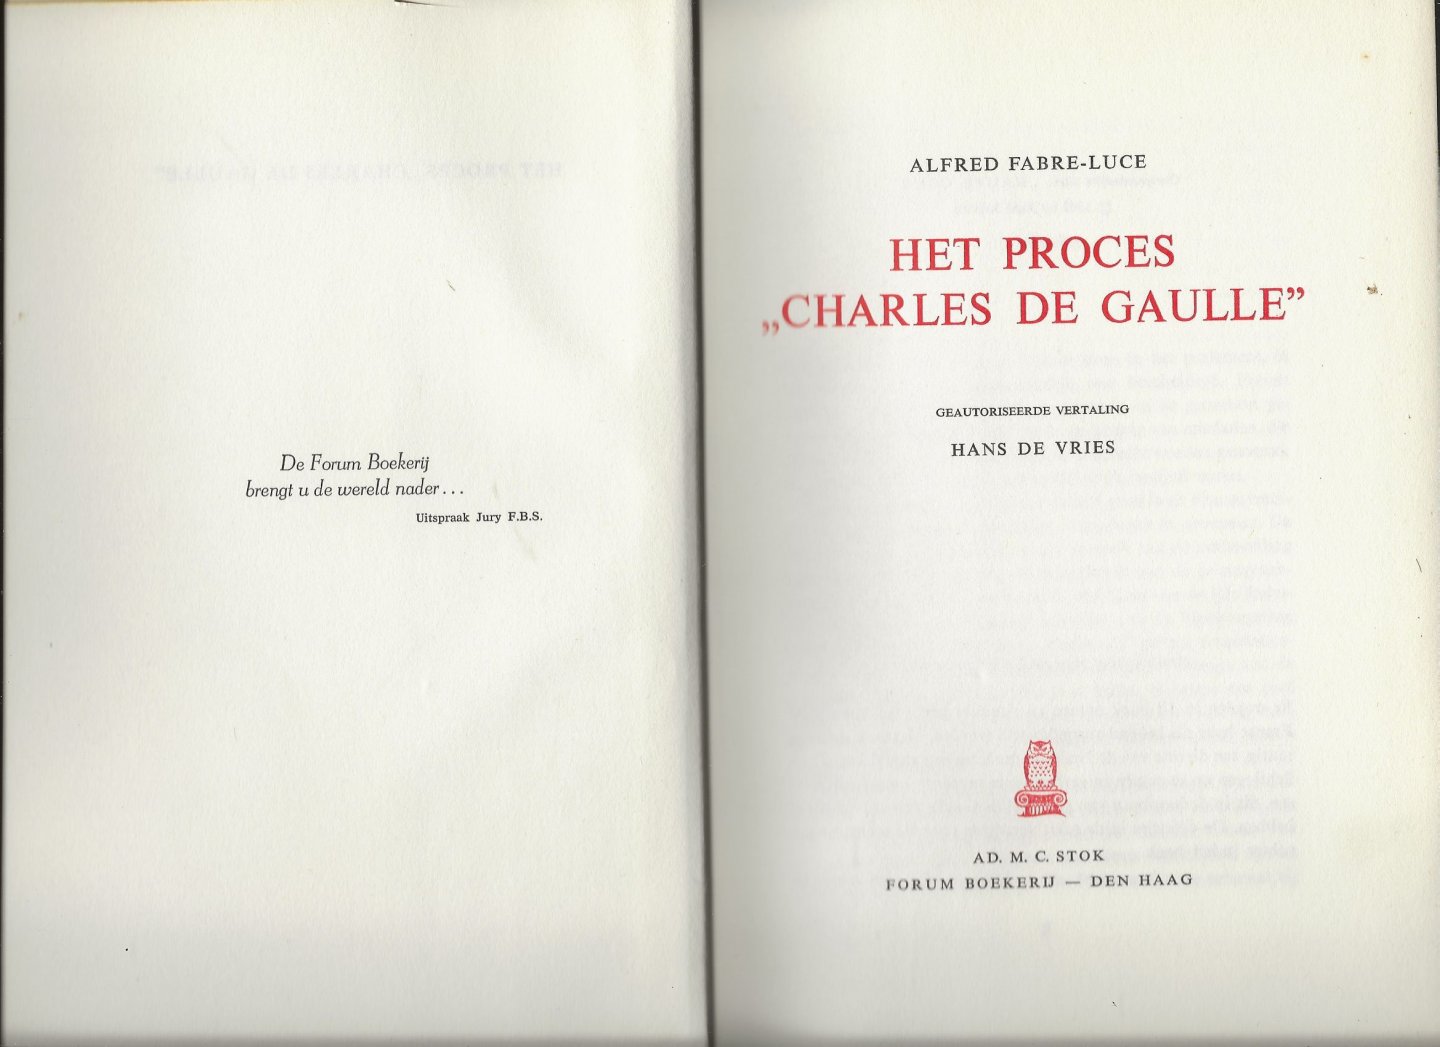 Fabre-Luce, Alfred Geautoriseerde vertaling Hans de Vries - Proces Charles de Gaulle, het ( aan de hand van een fictief proces probeert de schrijver Charles de Gaulle te doorgronden)